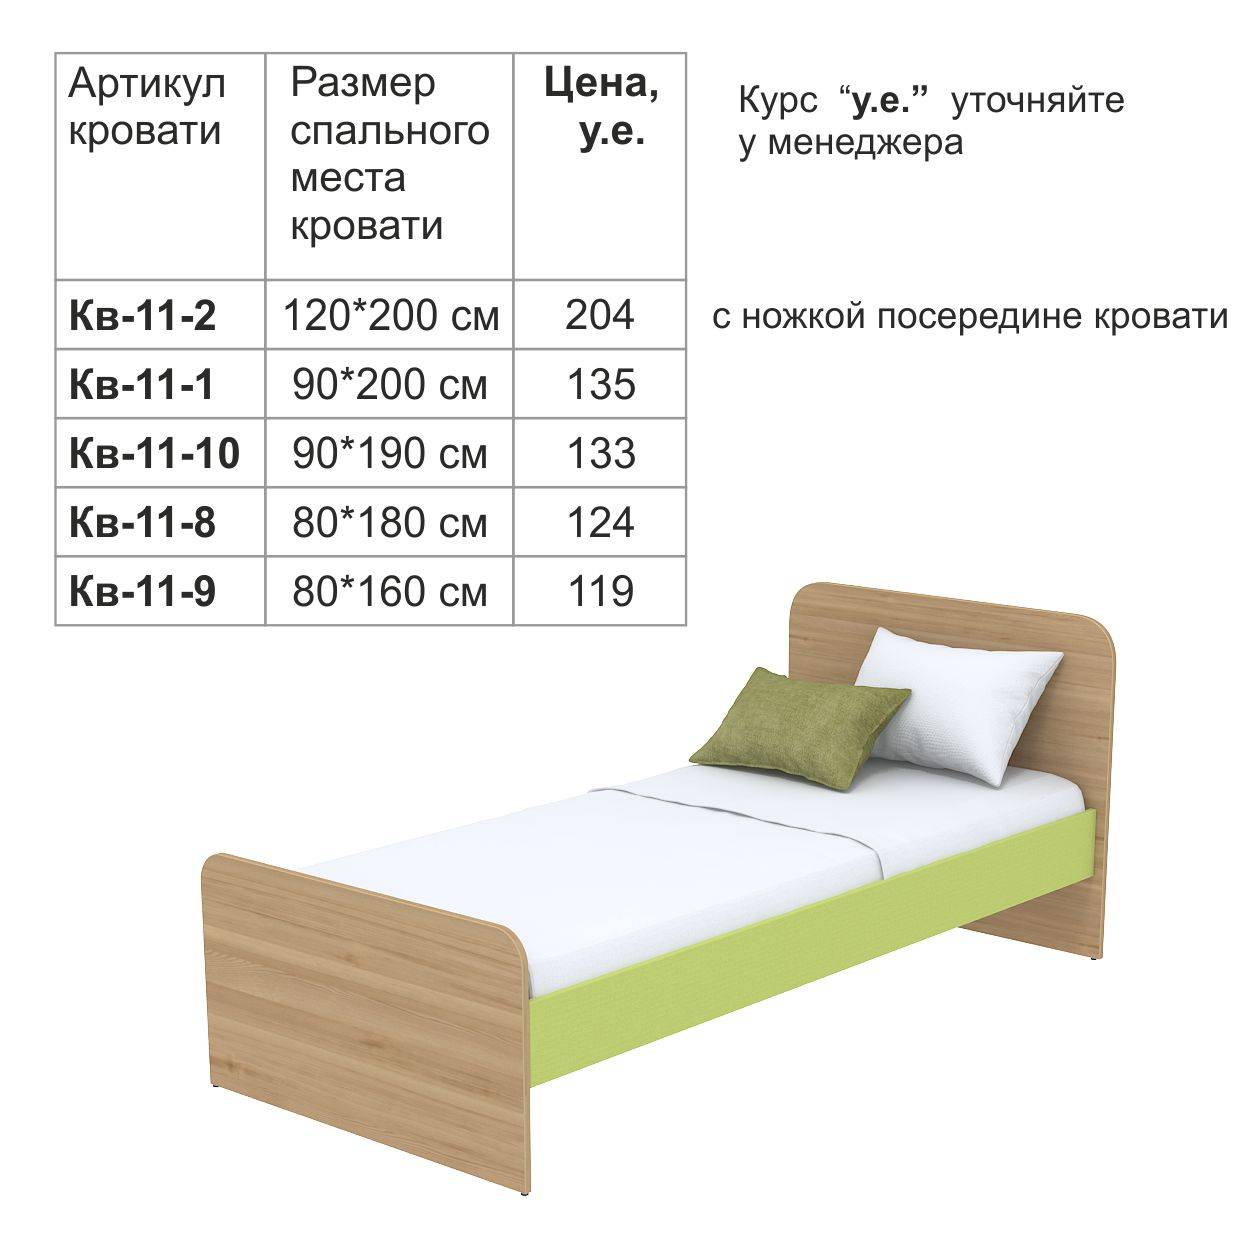 Возможные размеры кроватей. как выбрать подходящие габариты, как рассчитать мощность газлифта?